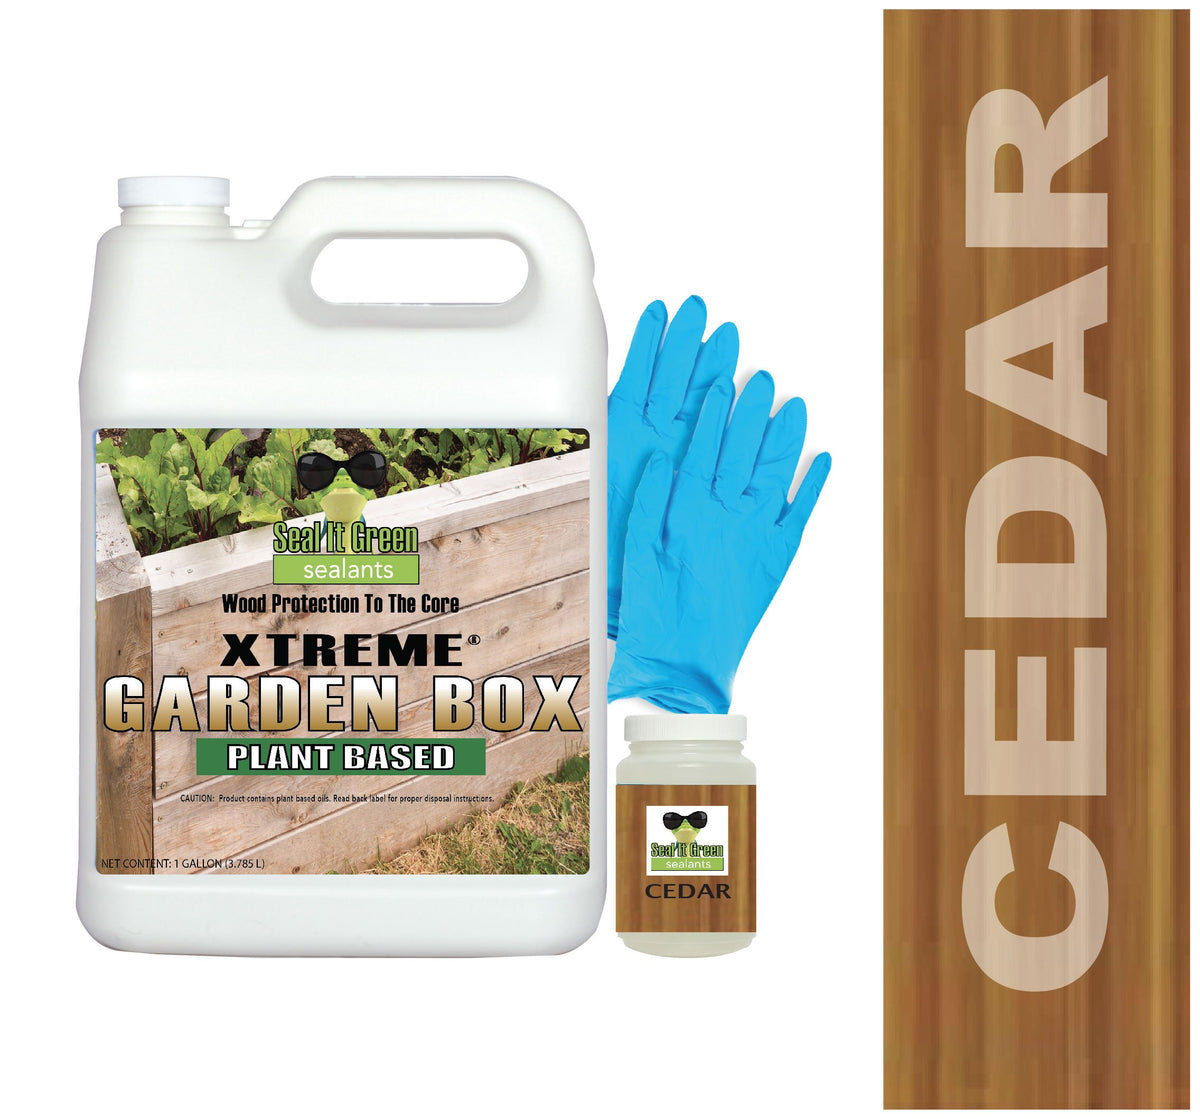 Cedar - Xtreme garden box sealer